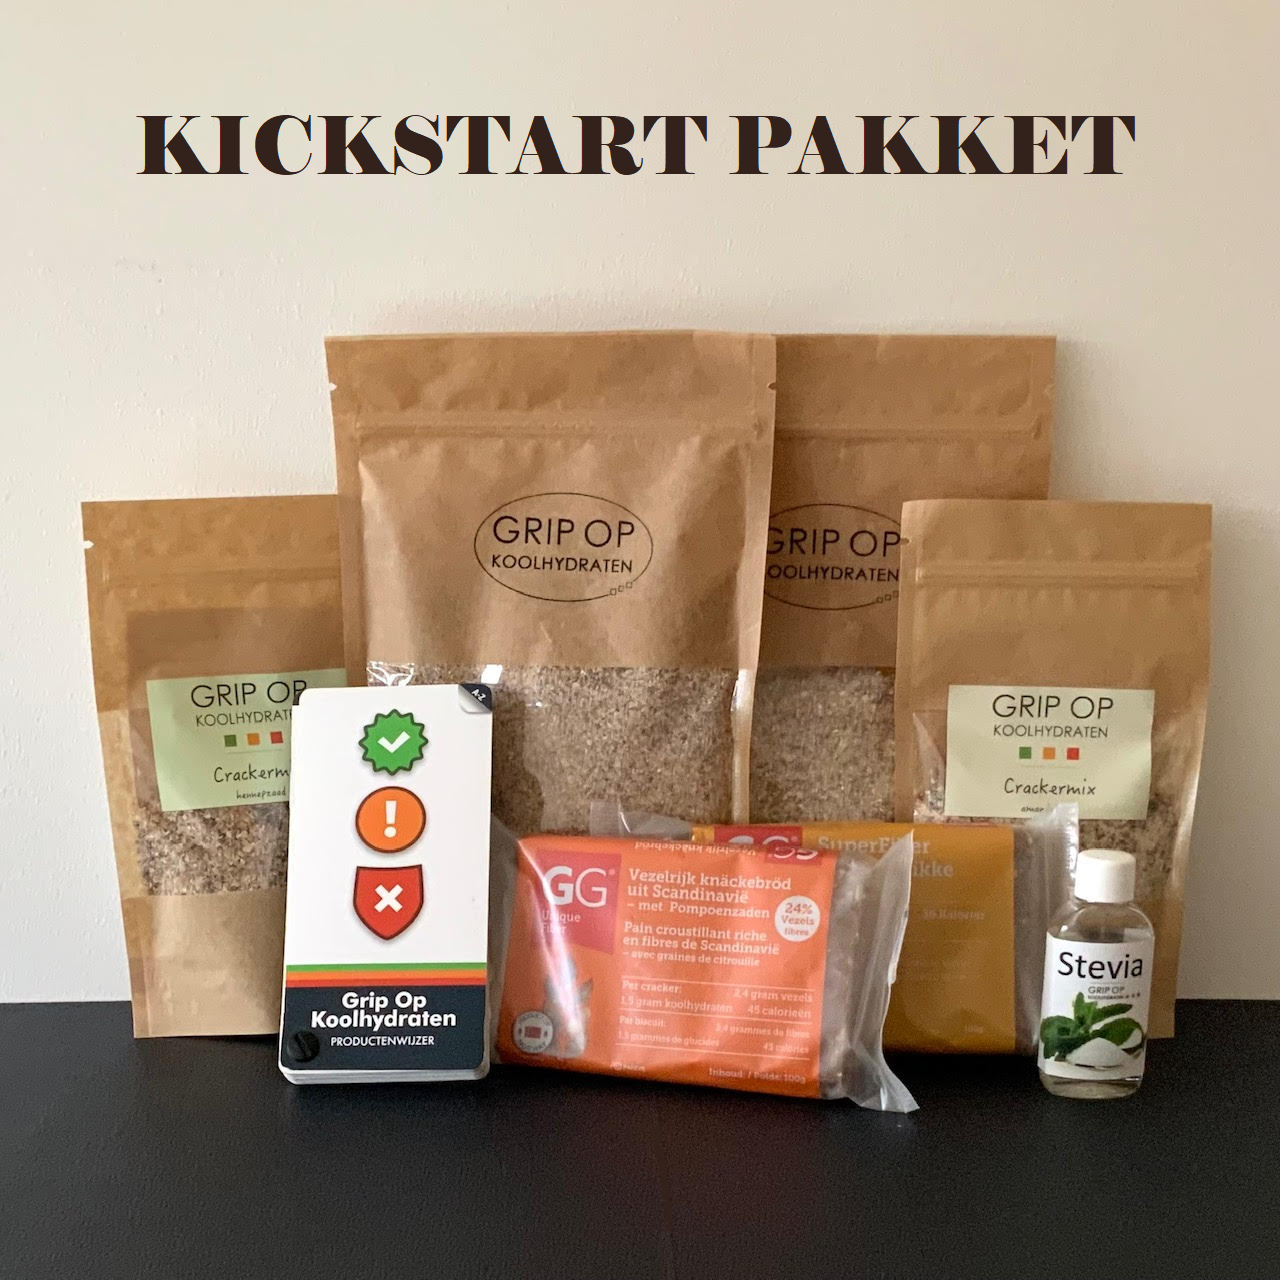 Kickstart pakket – Grip op Koolhydraten